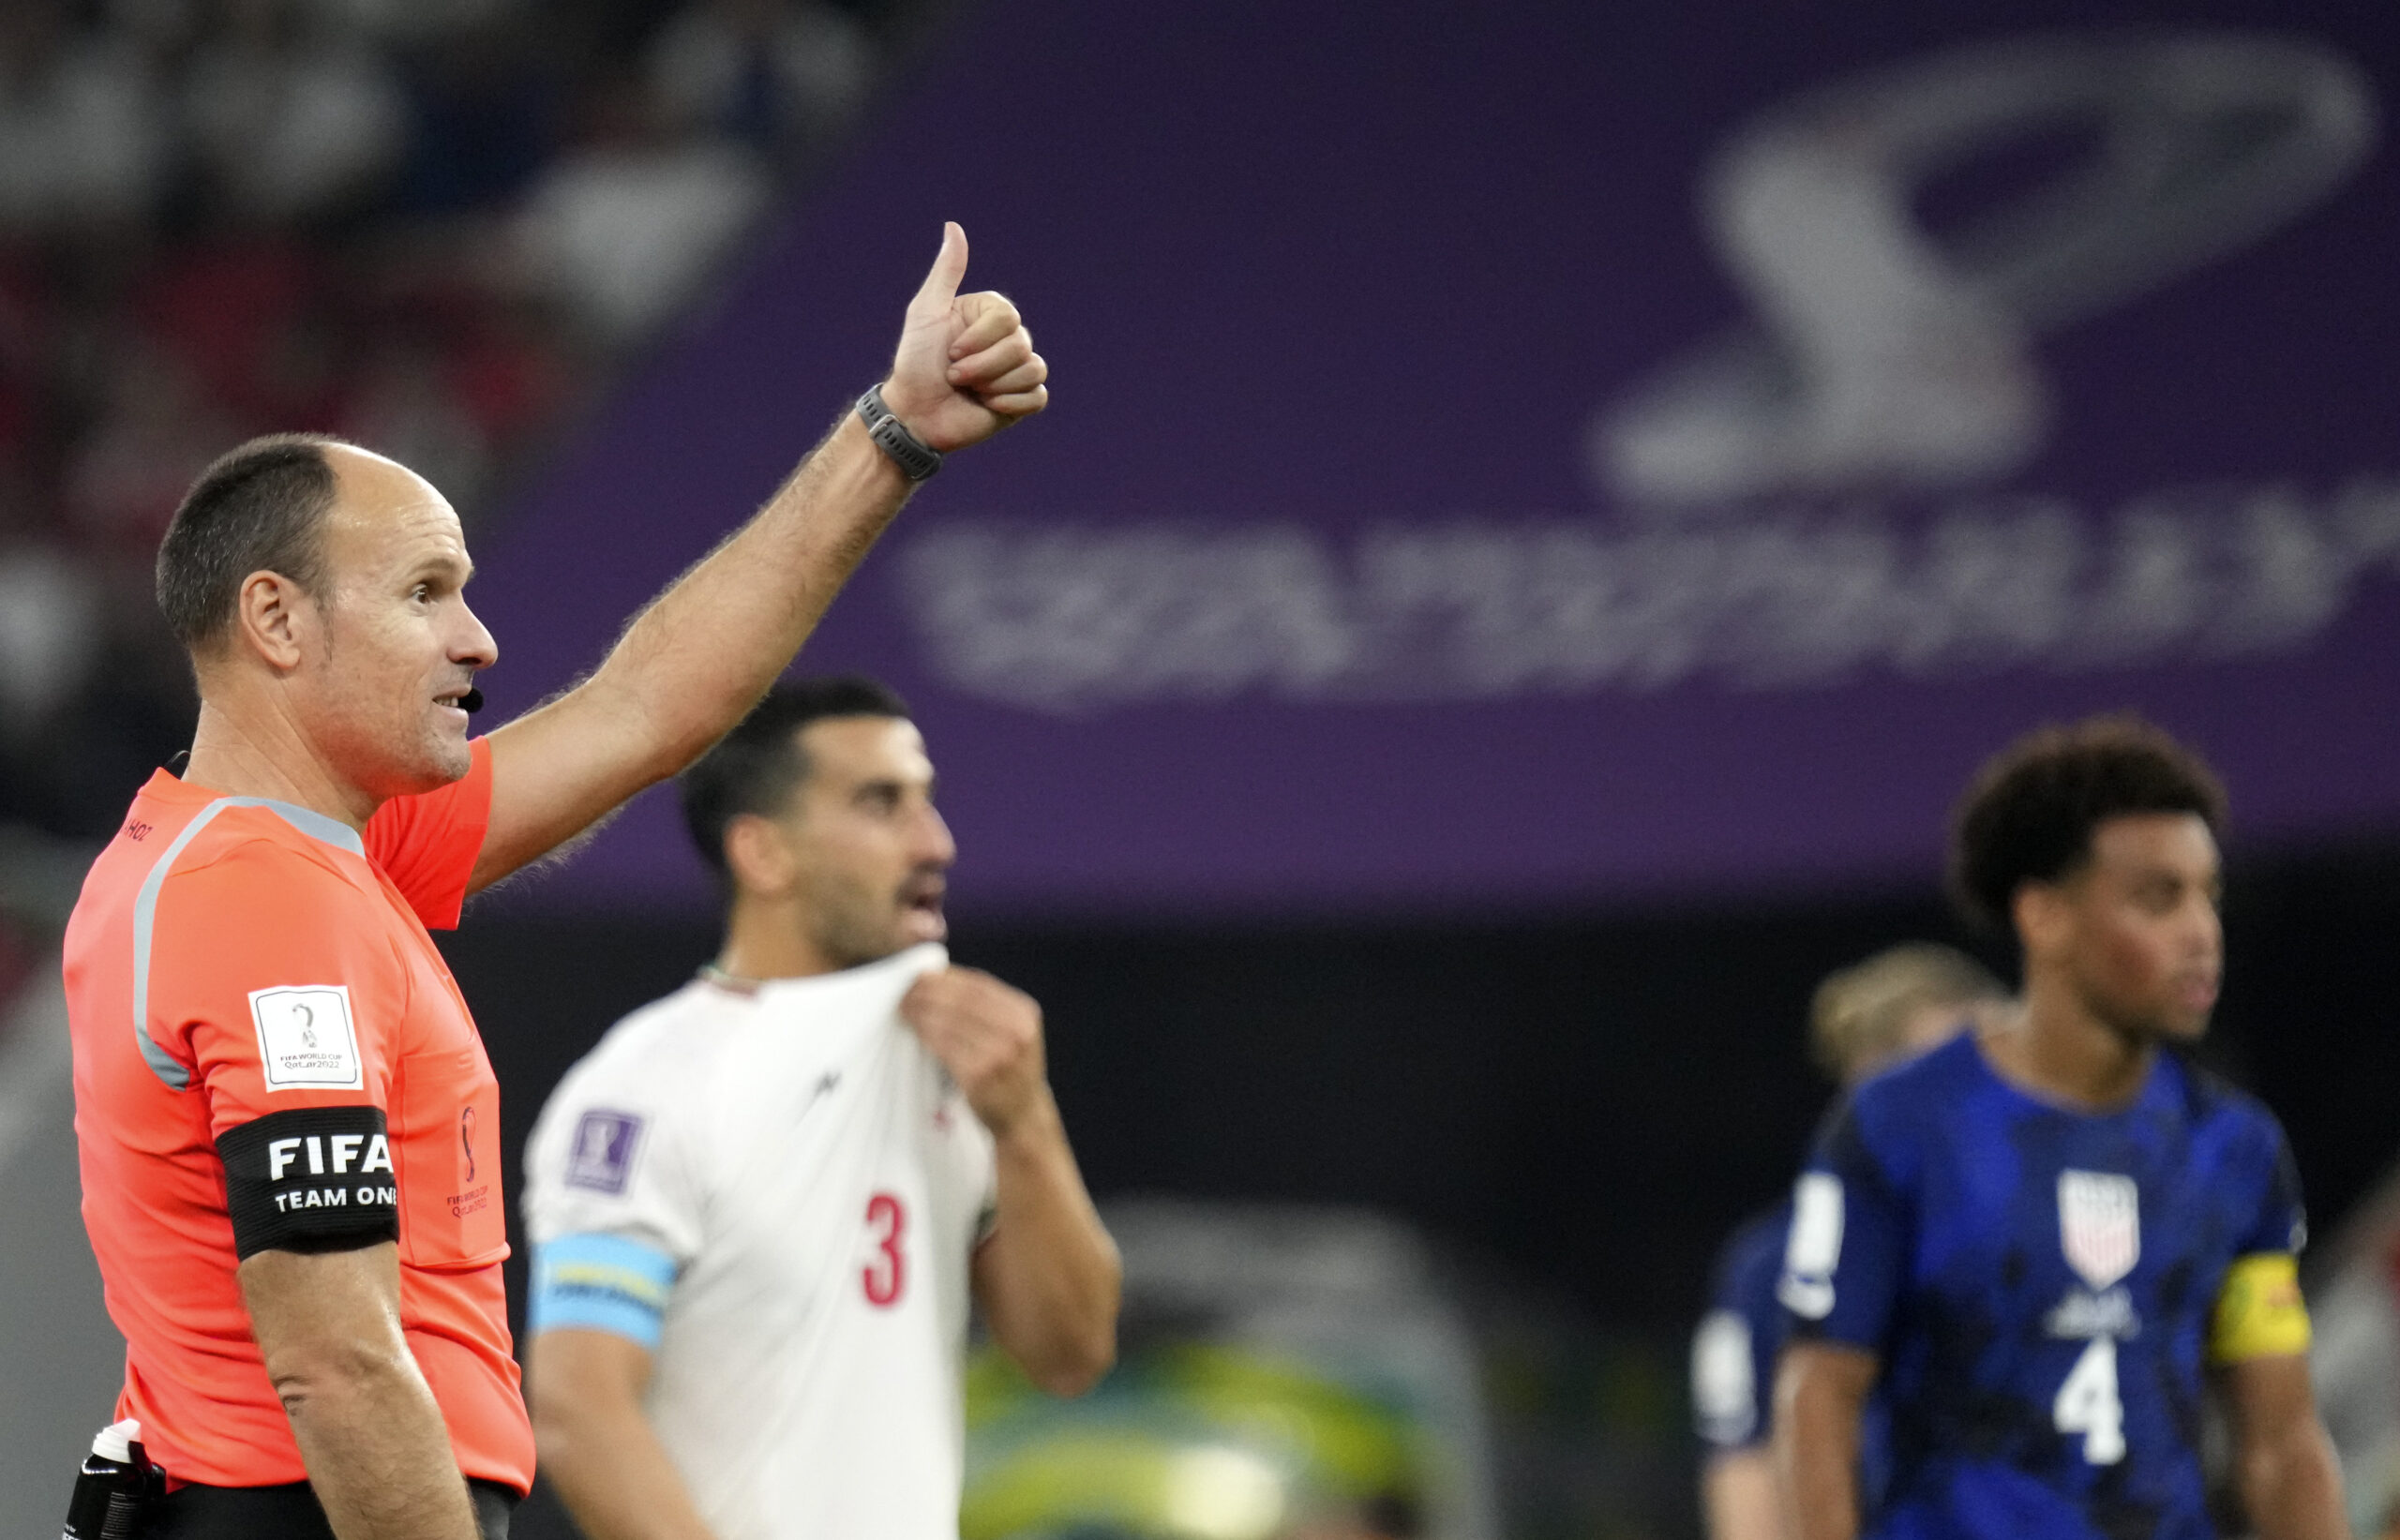 El árbitro Antonio Mateu Lahoz dirigirá el partido entre Países Bajos y Argentina en el Mundial Qatar 2022. Foto: Xinhua.